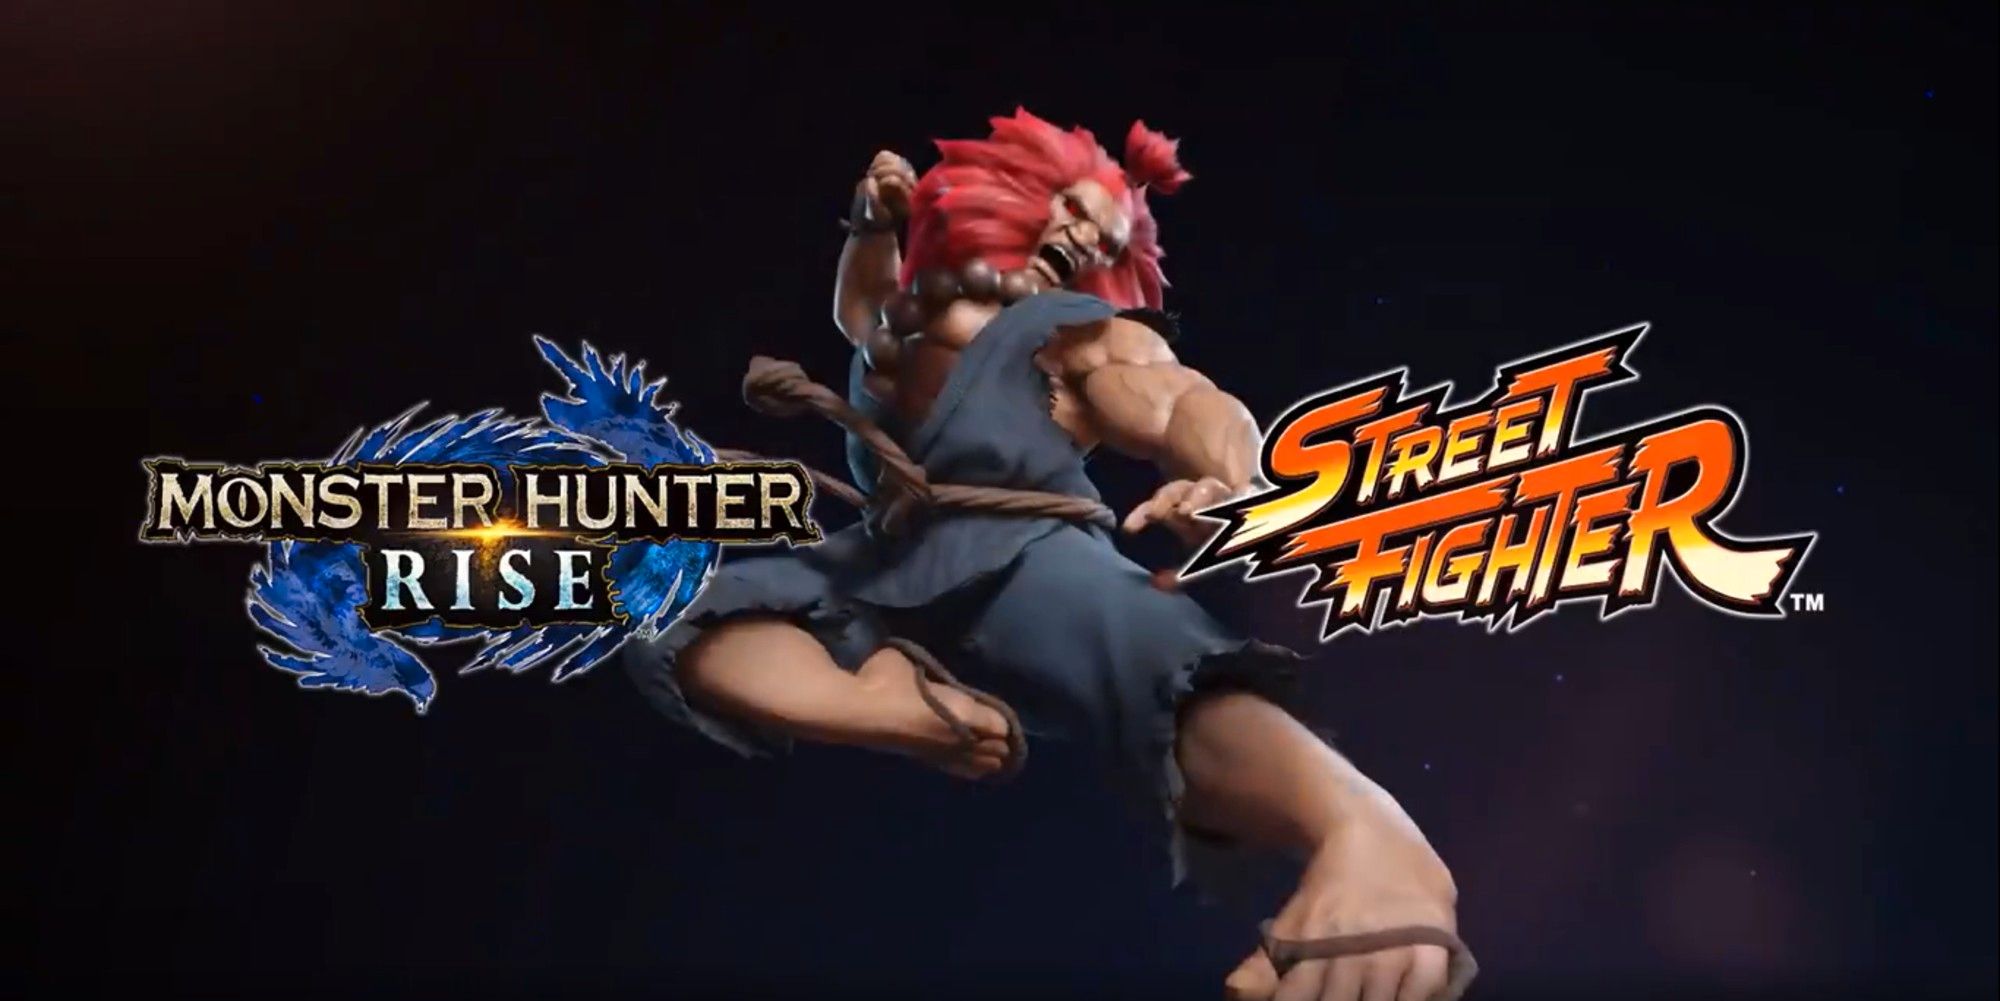 Monster Hunter Inuka Akuma Street Fighter